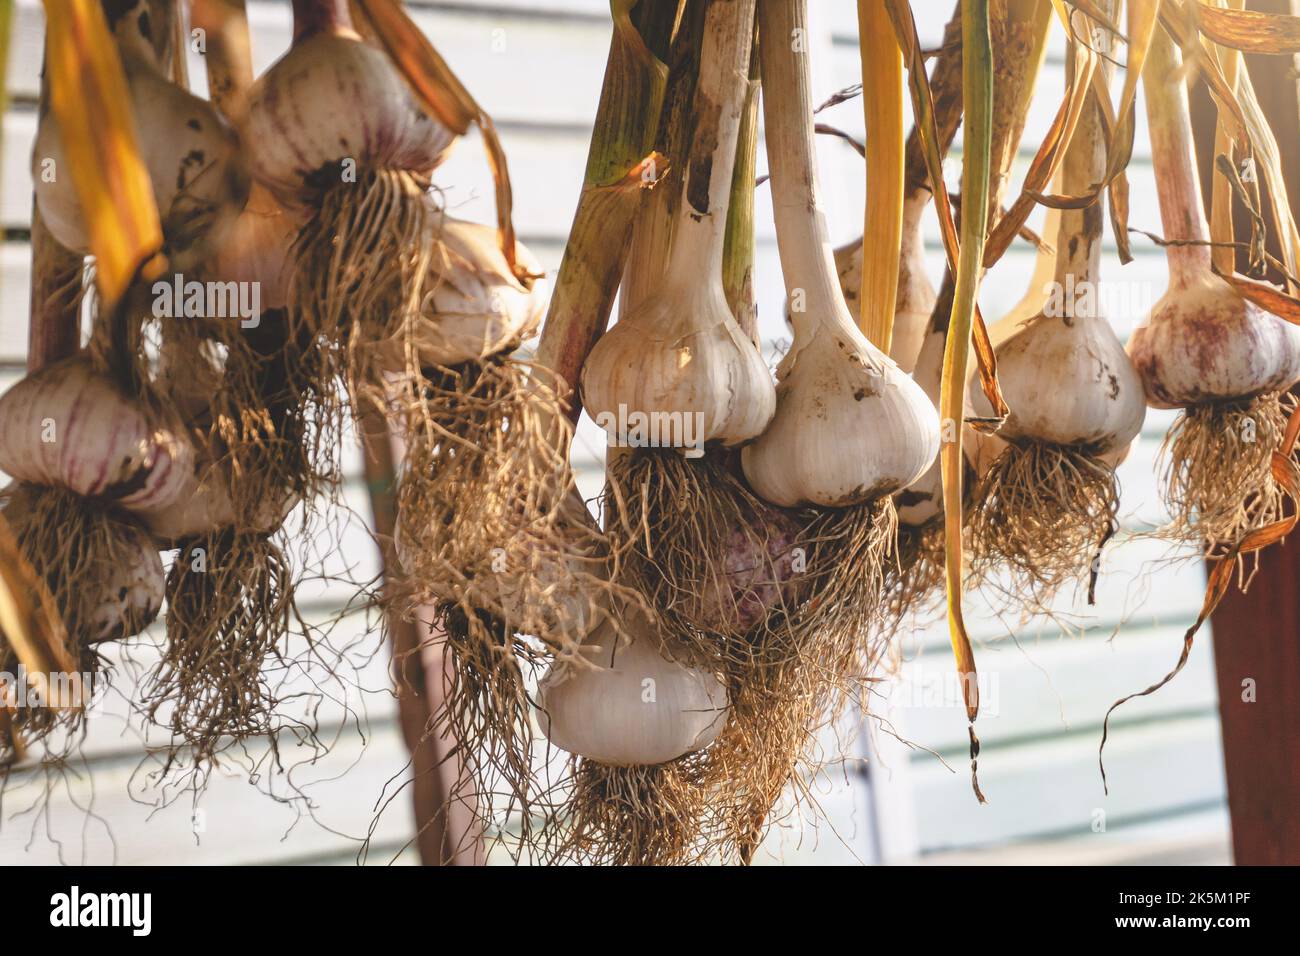 Guarire l'aglio appendendolo a grappoli. Asciugando l'intera pianta dell'aglio, bulbo, radici e gambo all'aperto. Foto Stock